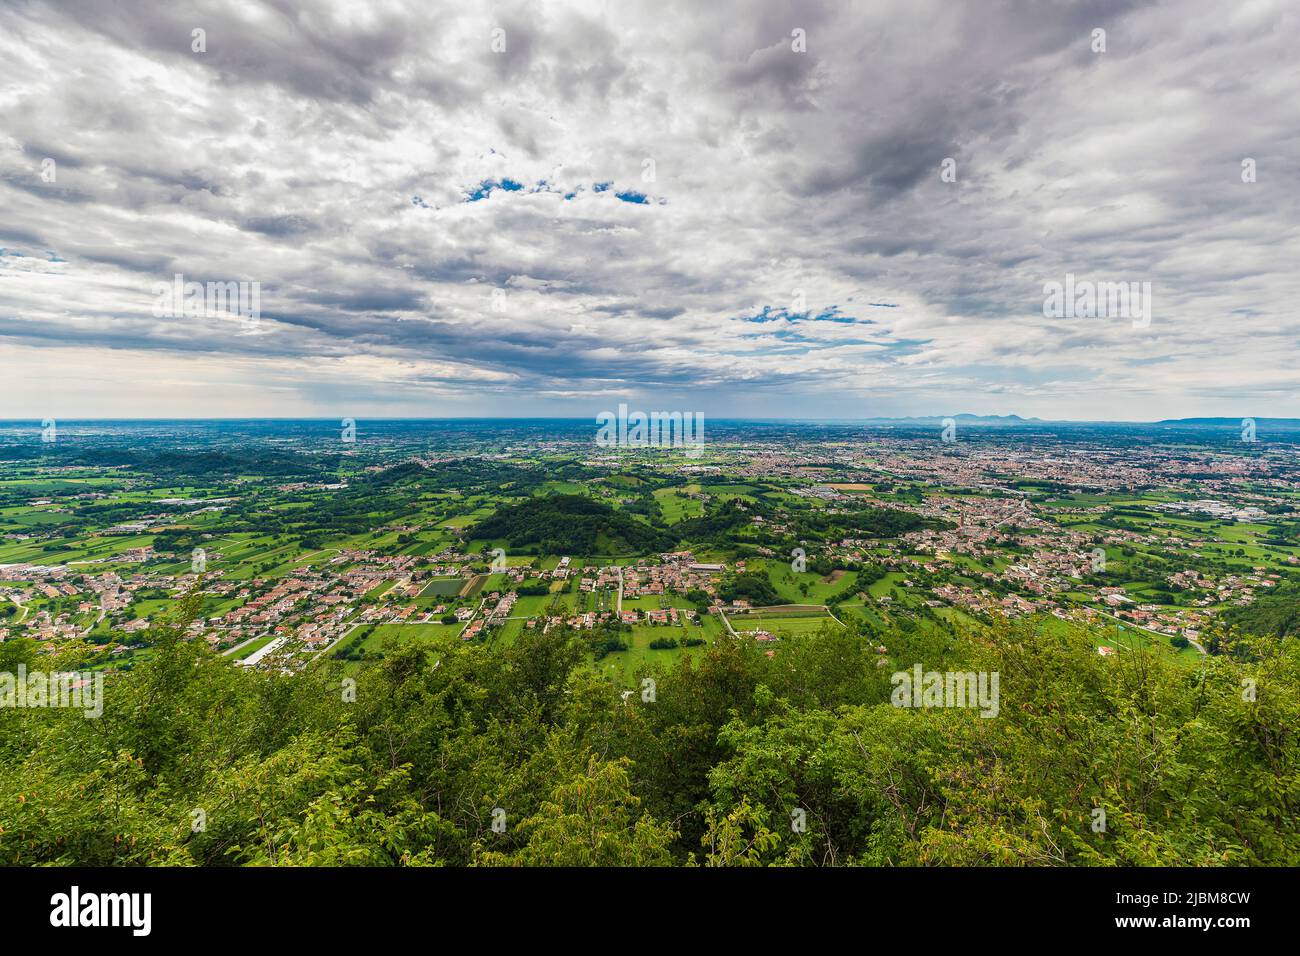 Italia Veneto - Monte Grappa - Strada Generale Giardino - Veduta sulla pianura Foto de stock